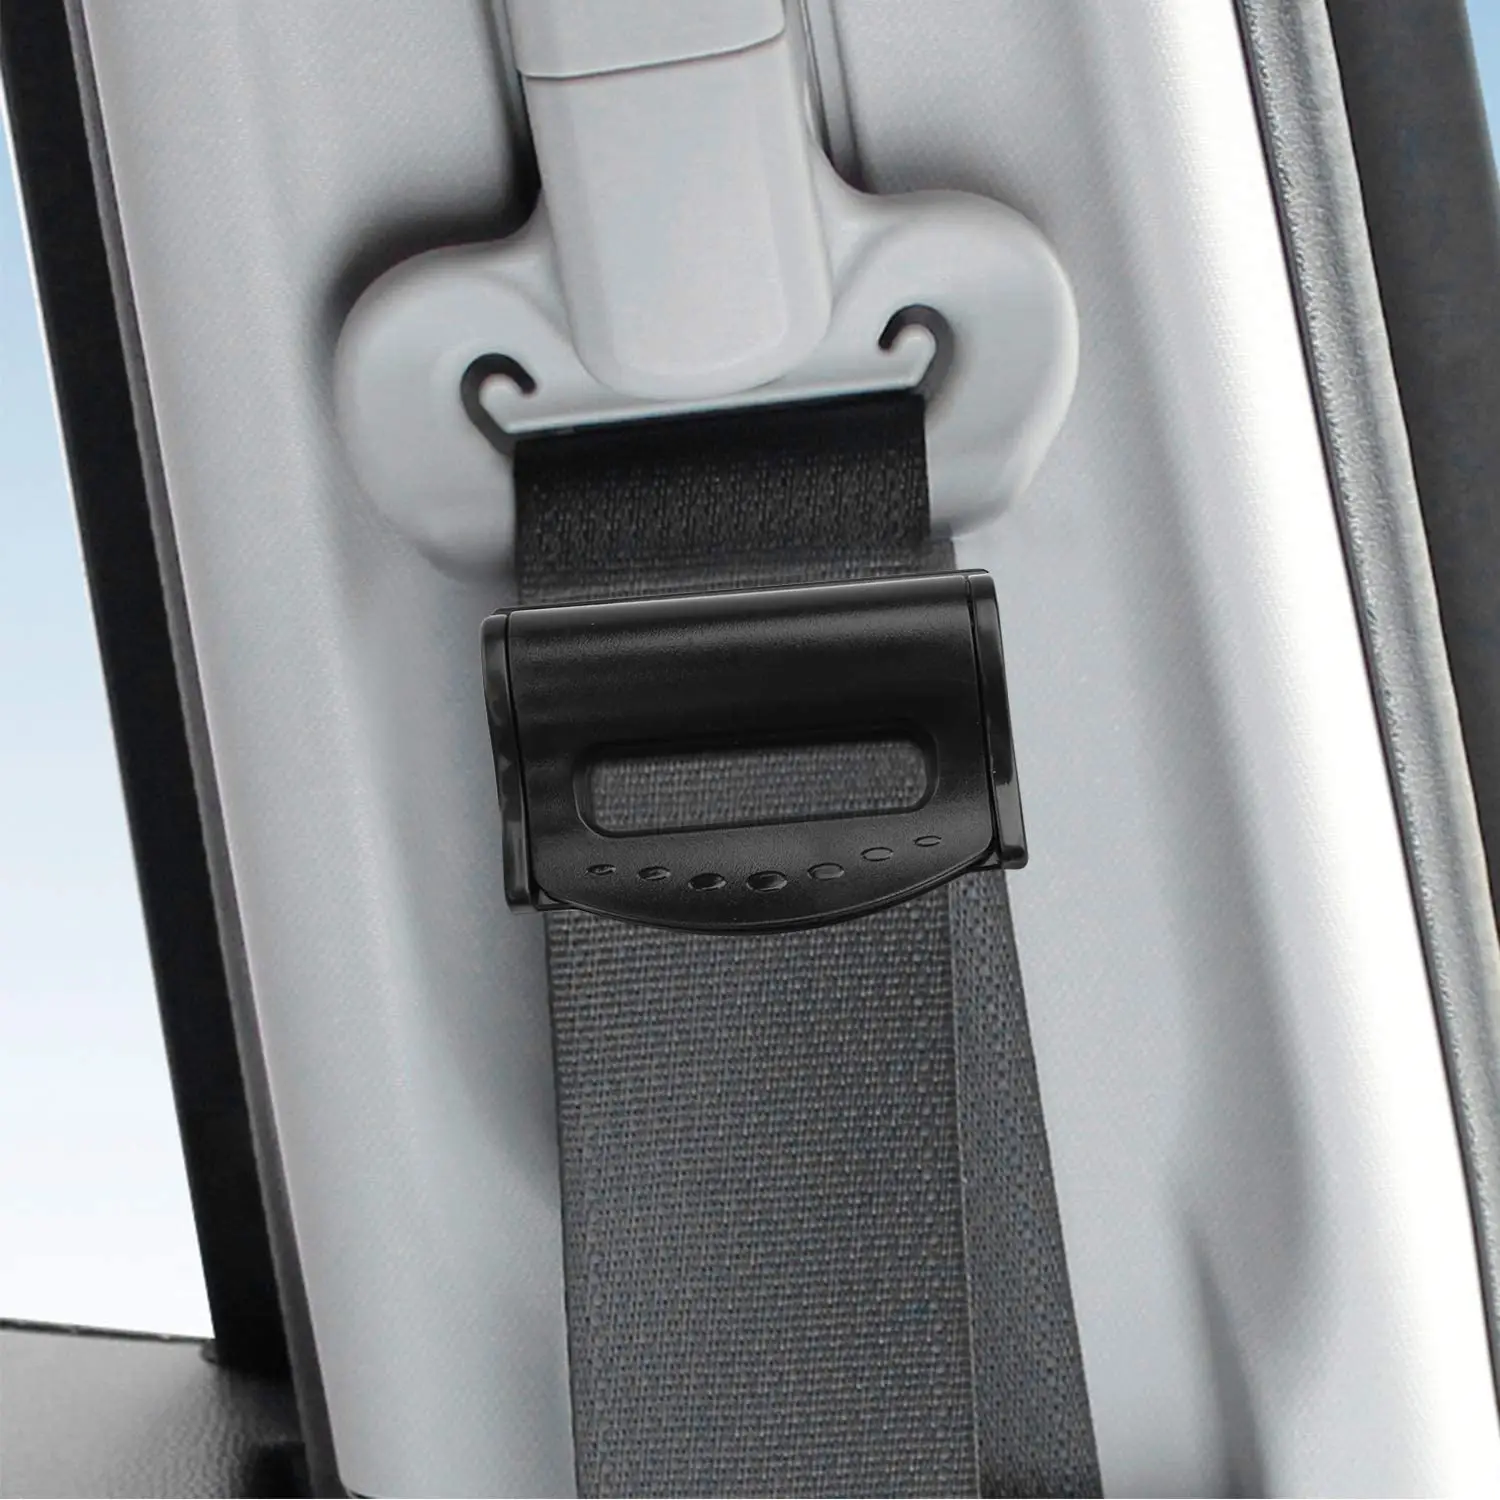 Pack of 3, Black Auto Shoulder Neck Protector Universal Car Seatbelt Strap Positioner Clip for Shorter People Norealm Car Seat Belt Adjuster Cover 